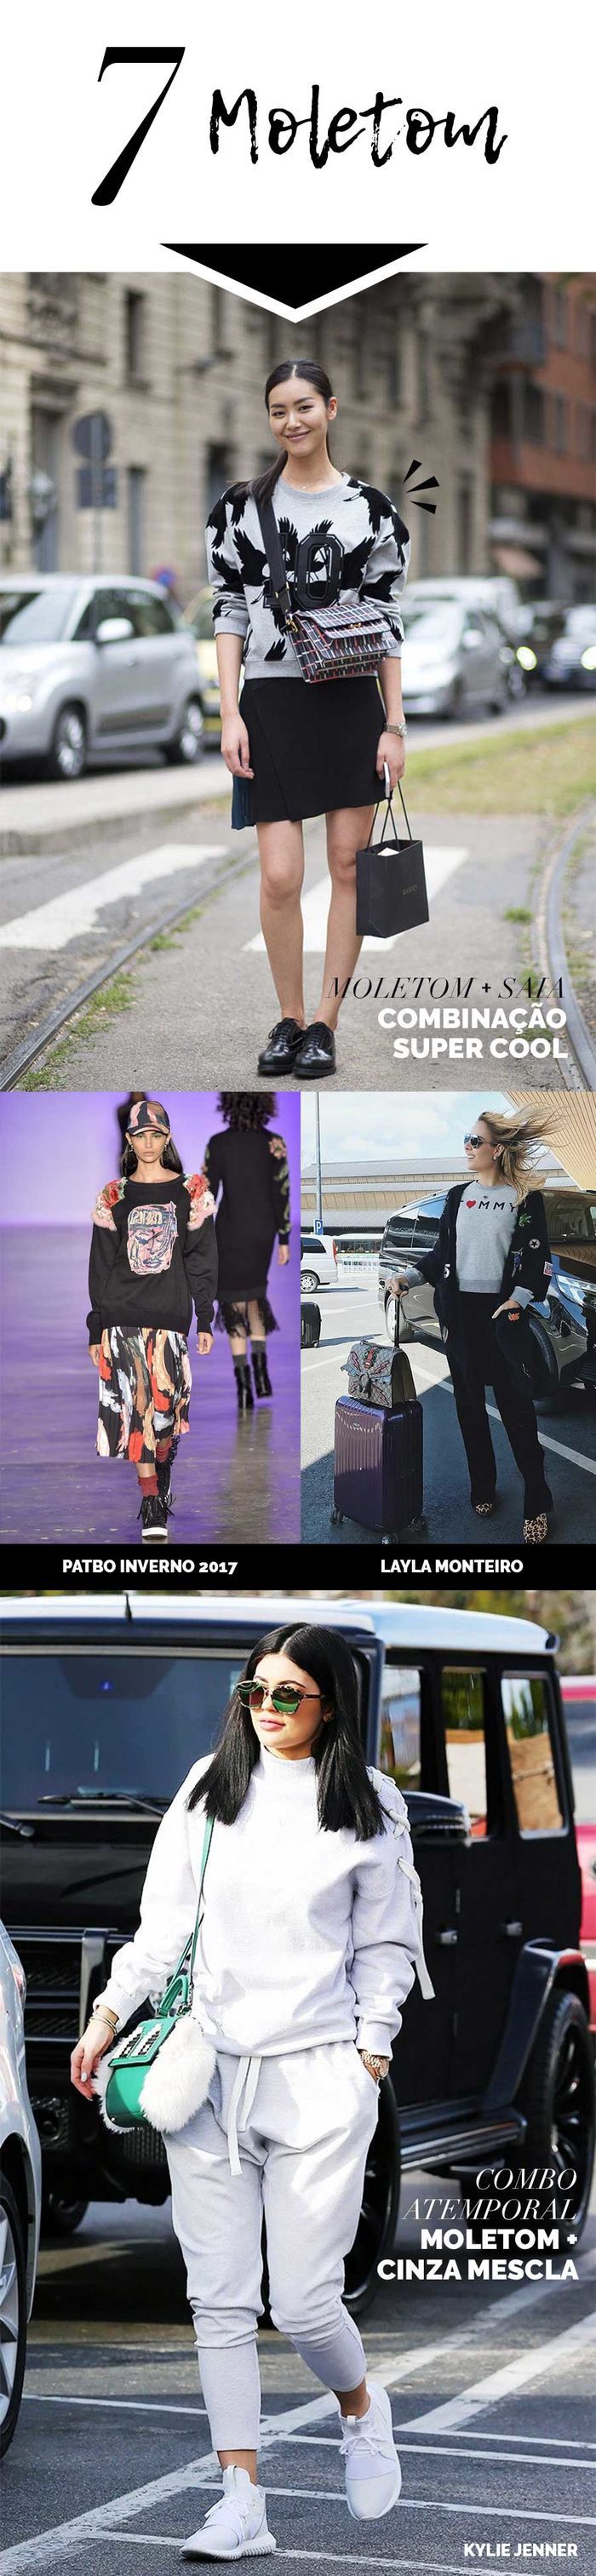 Layla Monteiro Peças que não saem de moda camisa branca jaqueta jeans moletom t-shirt